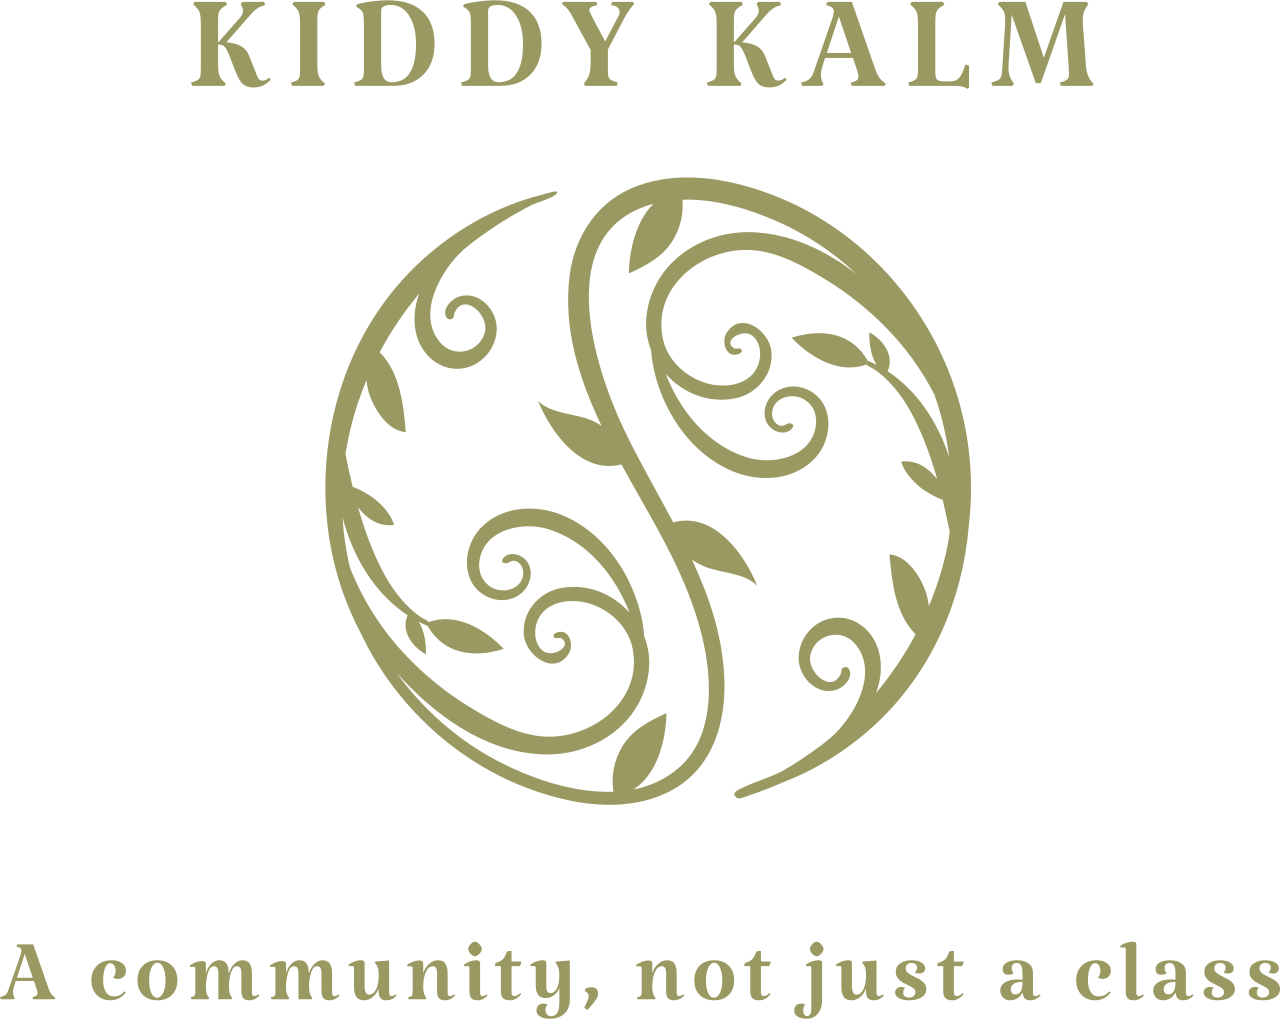 Kiddy Kalm's logo